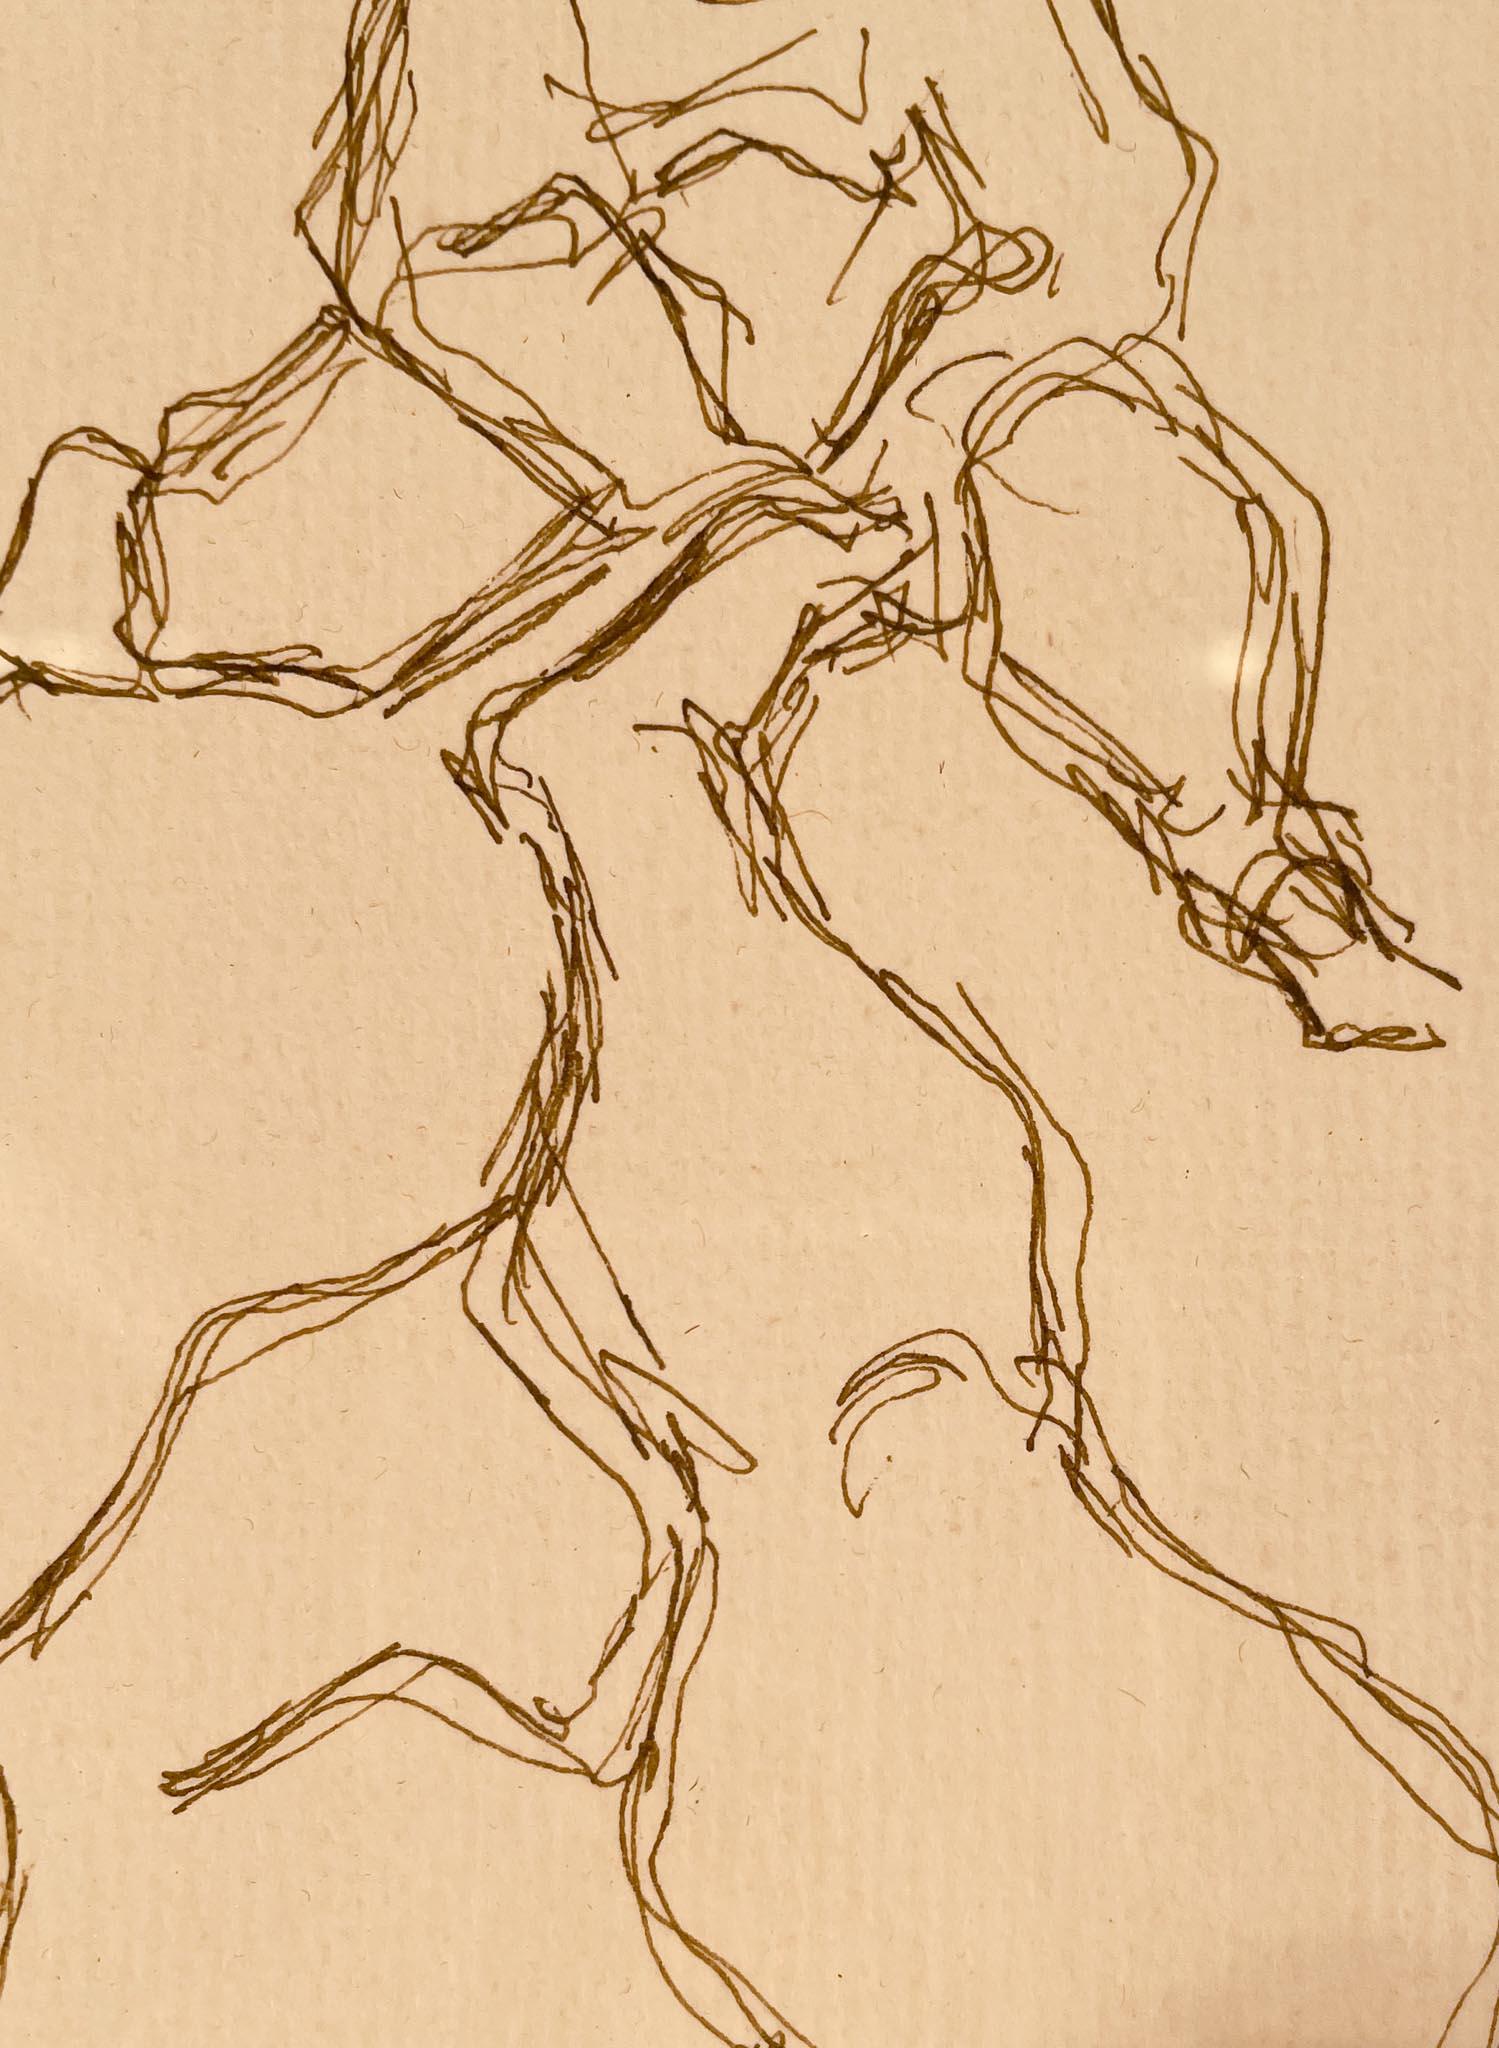 Studie für die Skulptur einer nackten Frau, die ein Baby balanciert, 1949, von Chaim Gross (1902-1991)
Tinte auf Papier
10 ½ x 7 ½ Zoll ungerahmt (26,67 x 19,05 cm)
16 ½ x 13 ¾ Zoll gerahmt (41,91 x 34,925 cm)
Signiert und datiert unten